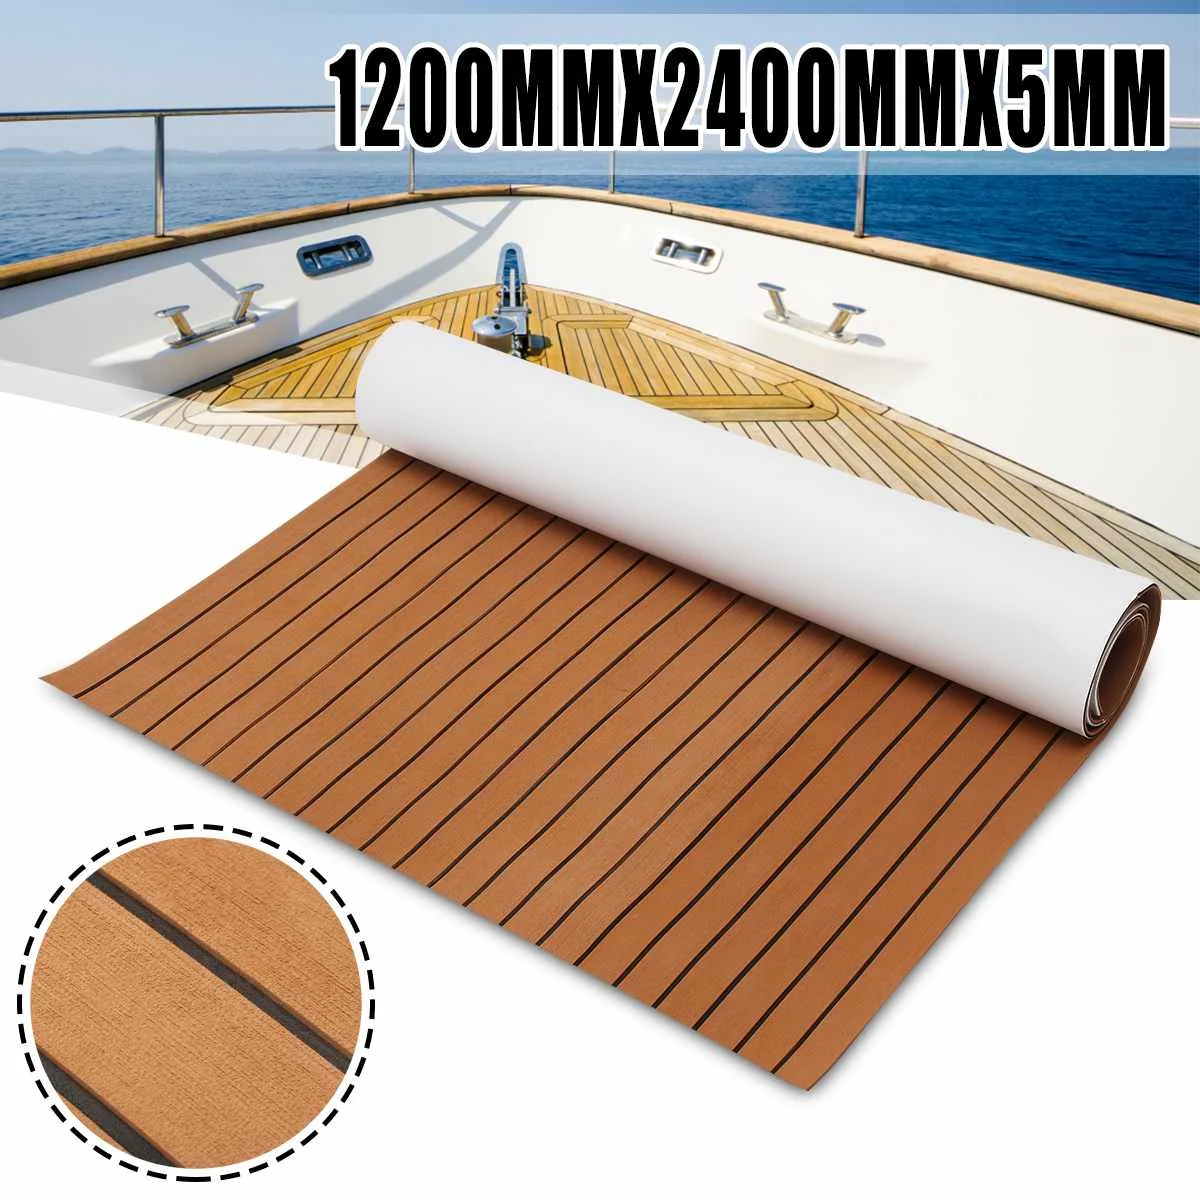 2.4m autoadesivo EVA Foam Boat Marine pavimentazione Faux Teak Decking foglio a strisce Yacht Mat 11 stili marrone grigio oro nero